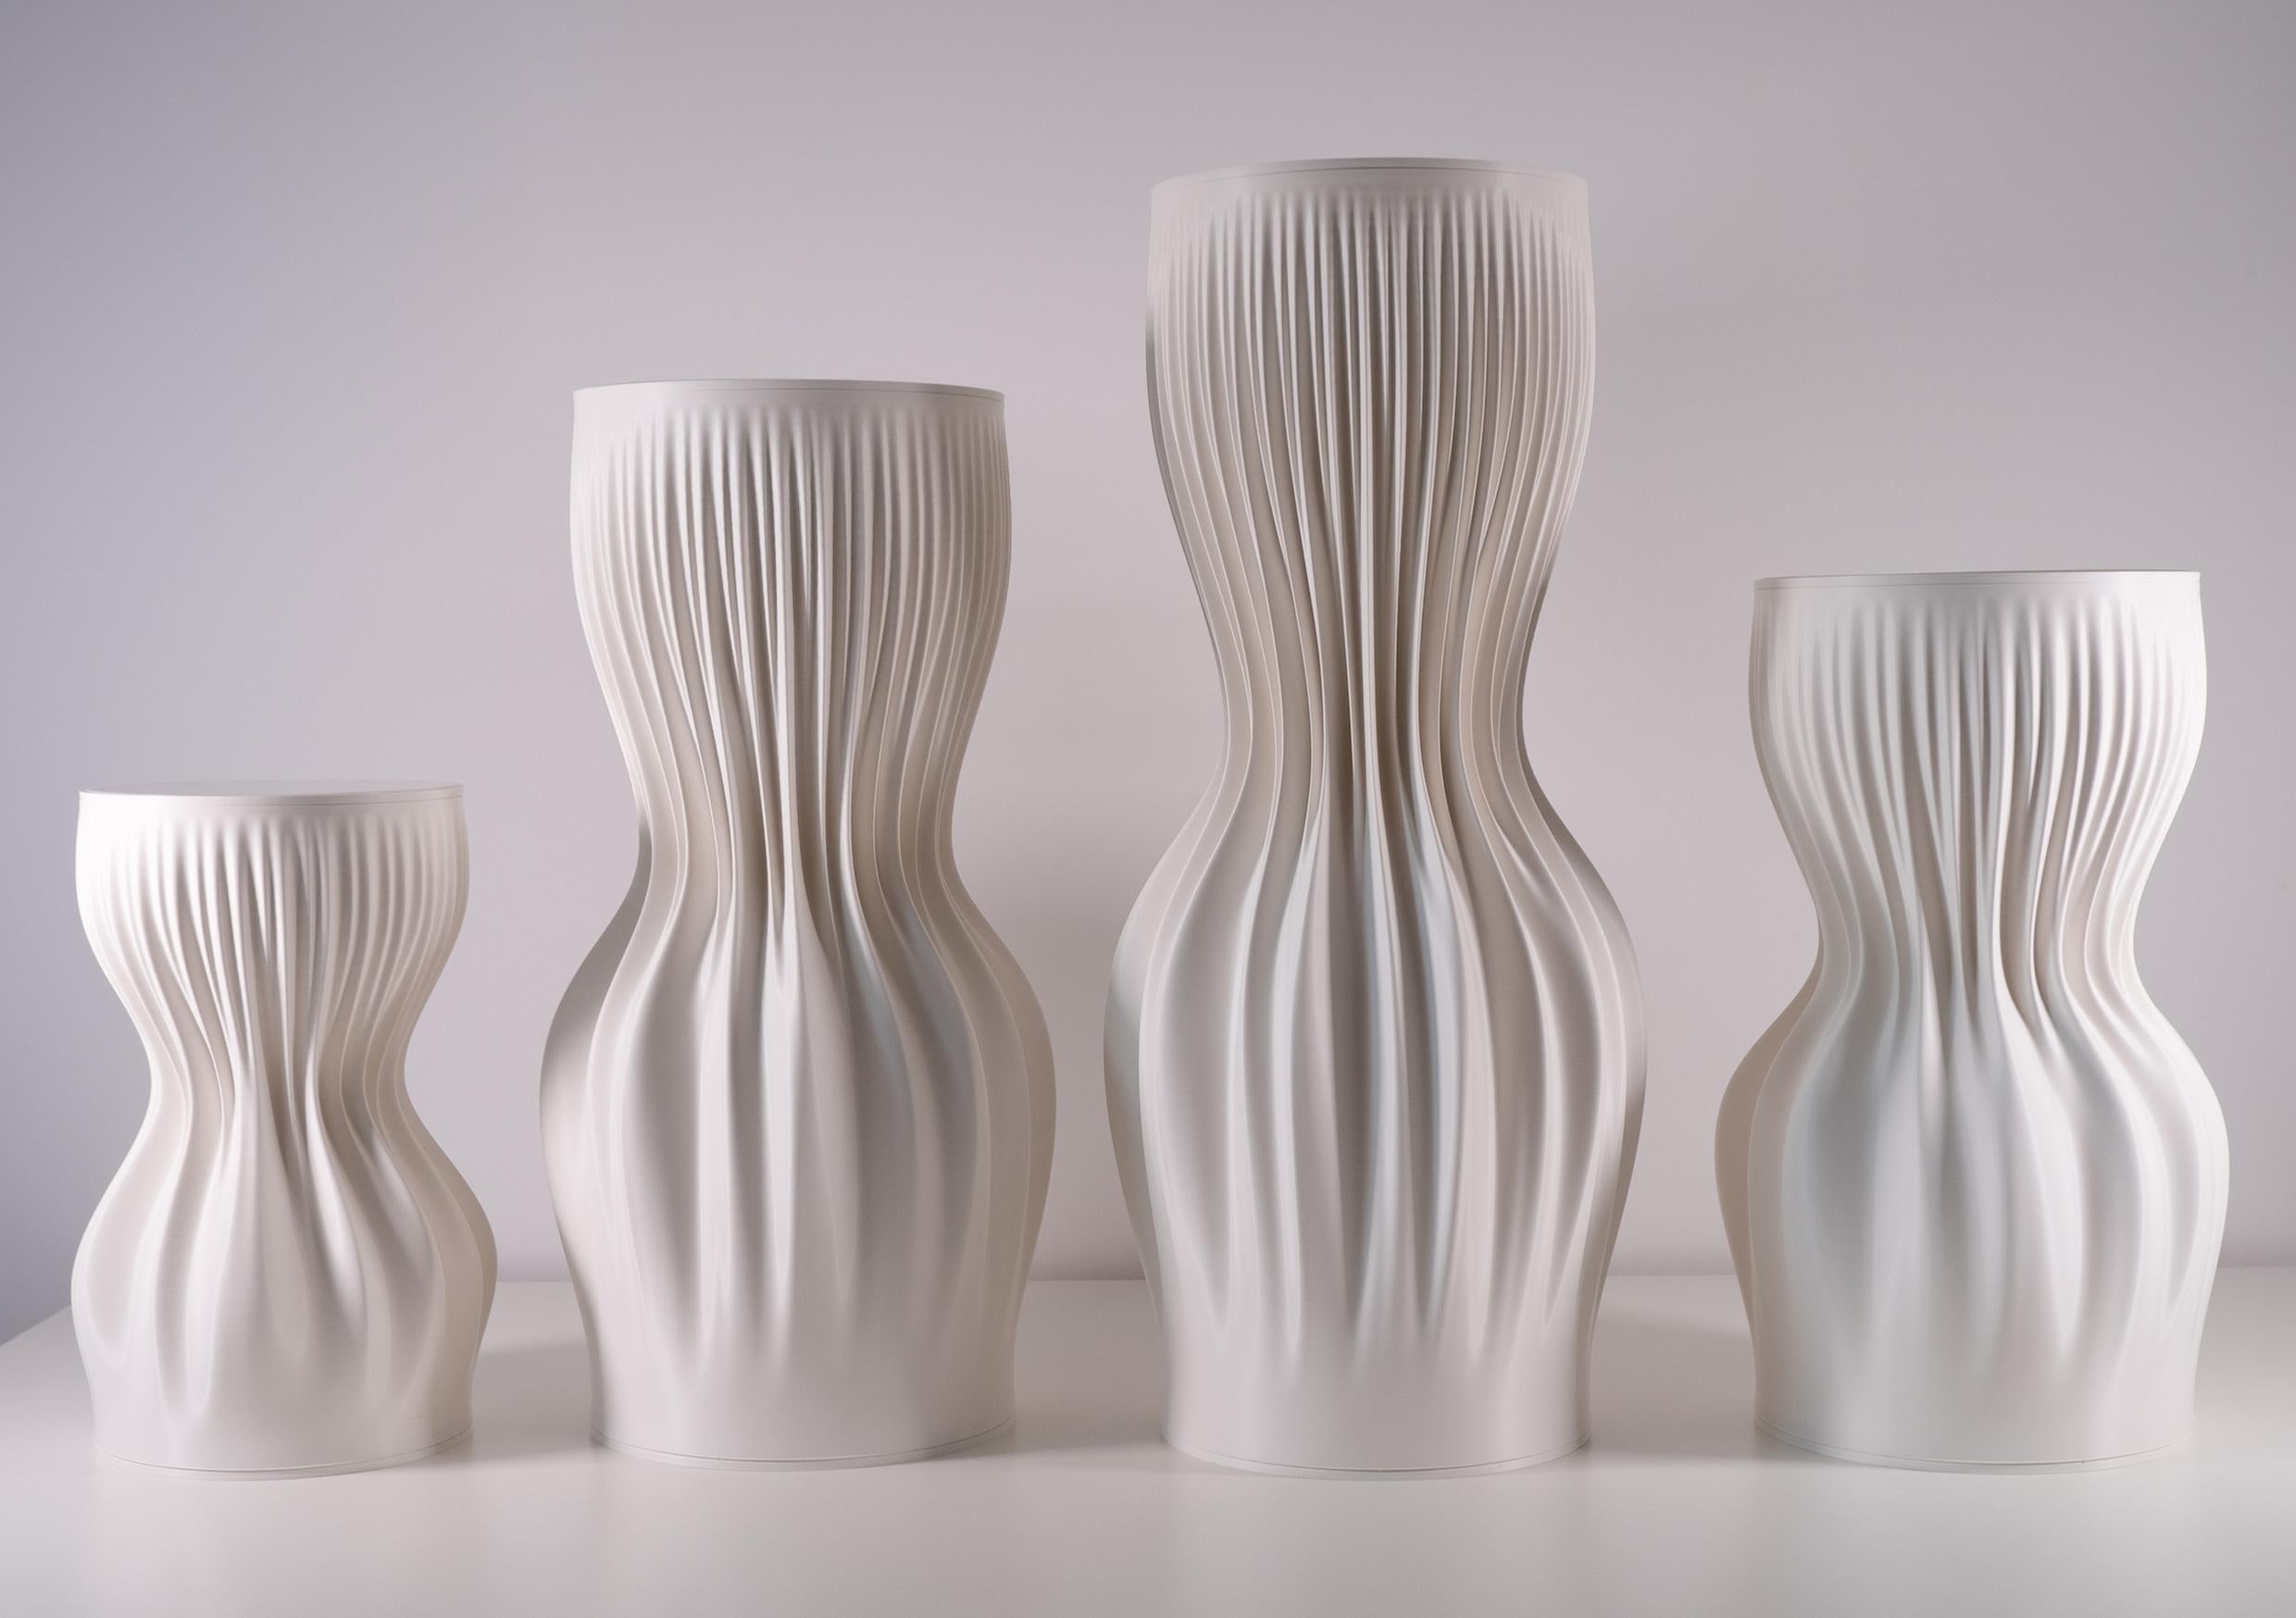 Plastic  JK3D Lamella Pedestal Medium, 3d Printed Design by Julia Koerner  For Sale